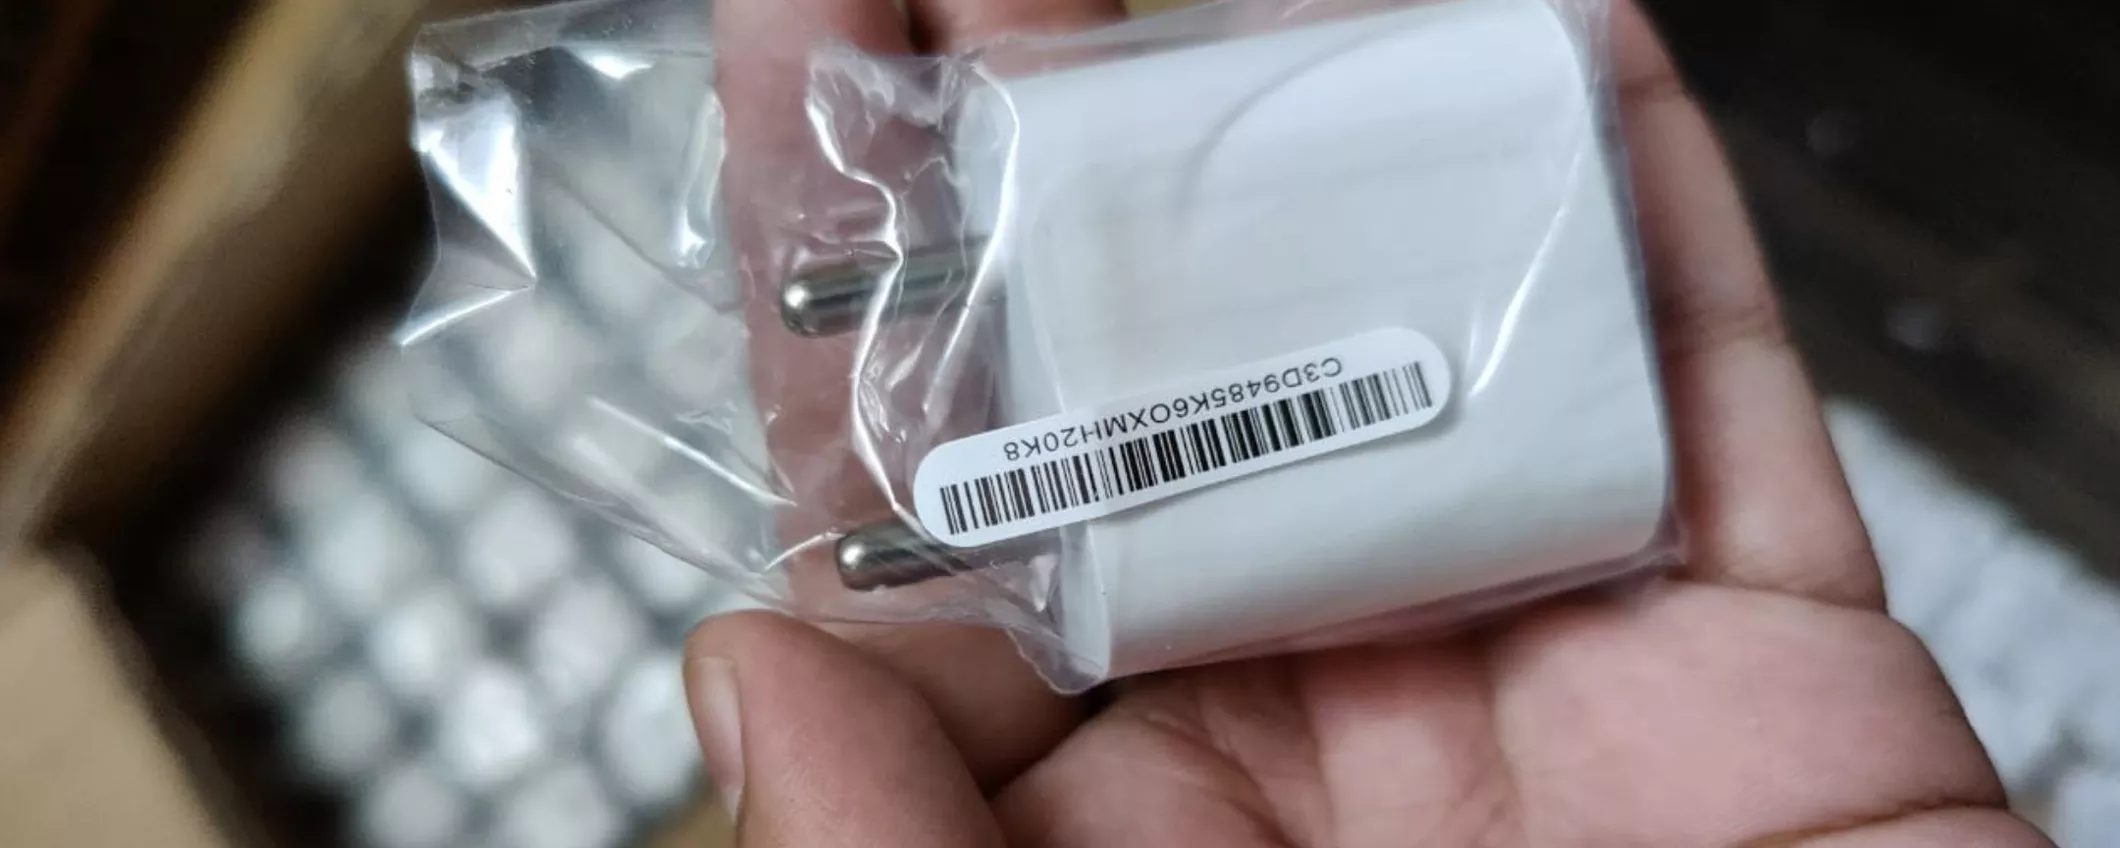 Caricatore Apple USB-C da 20W a meno di 21 euro su Amazon